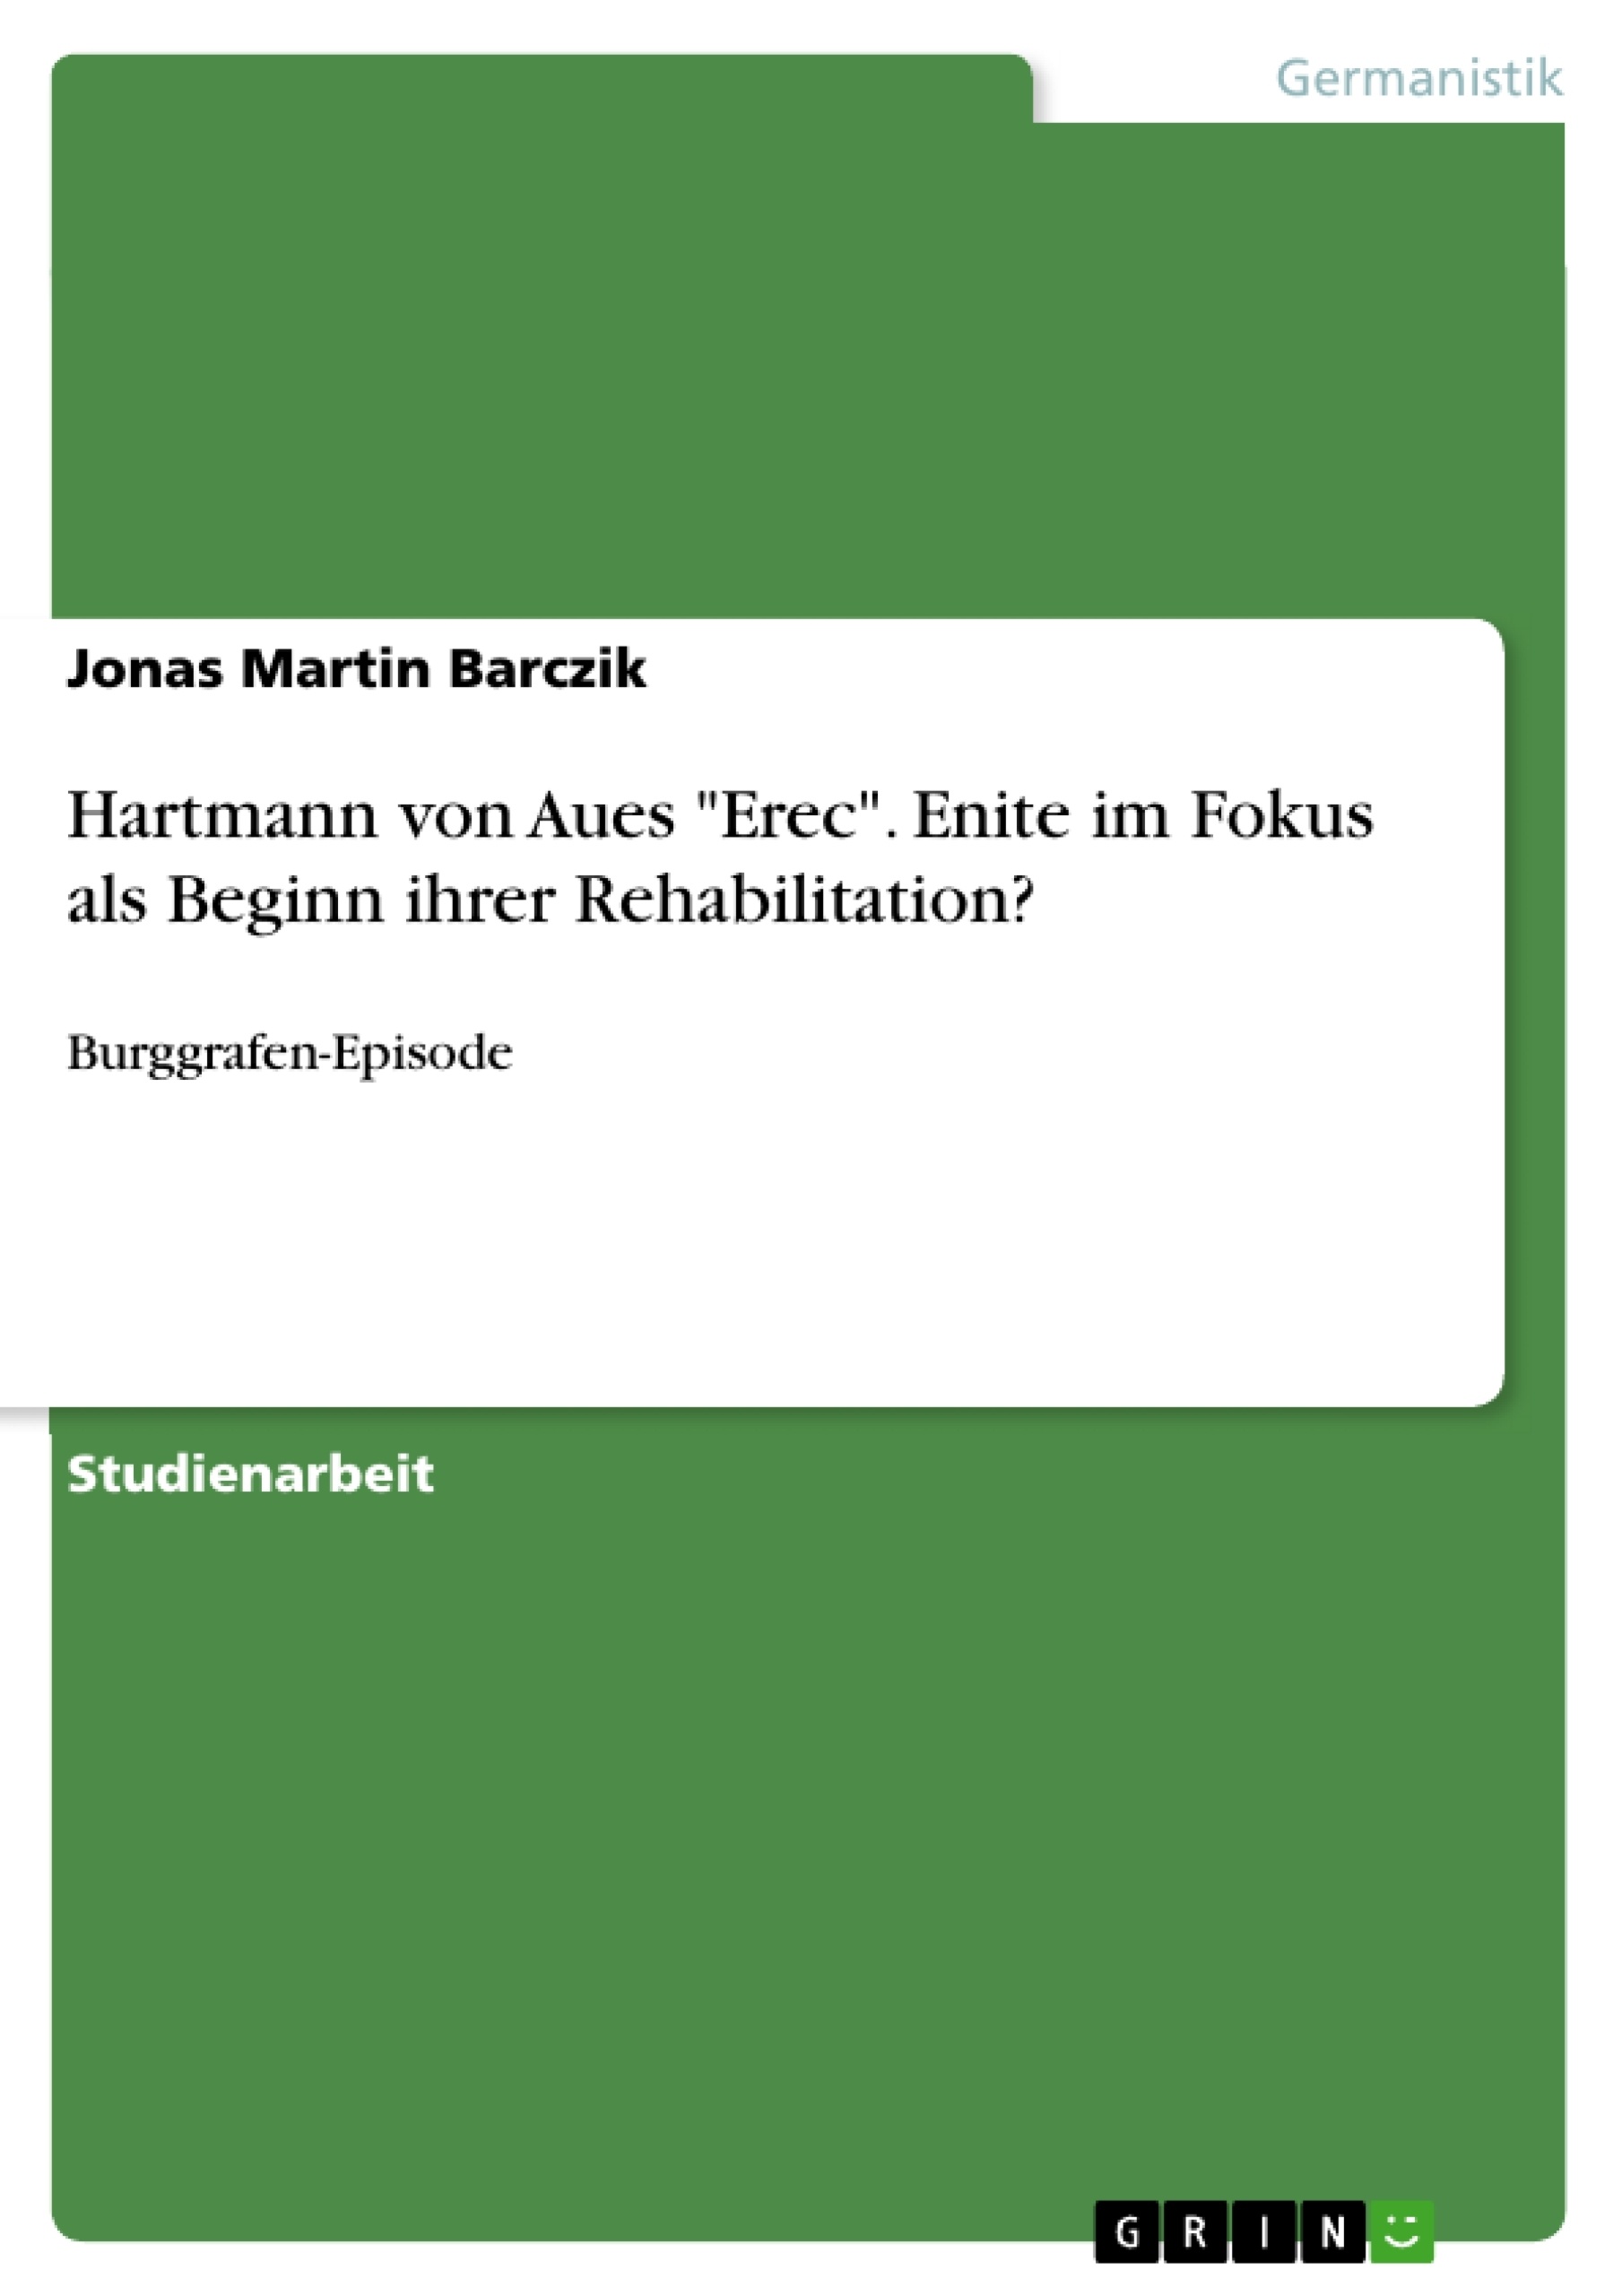 Titel: Hartmann von Aues "Erec". Enite im Fokus als Beginn ihrer Rehabilitation?